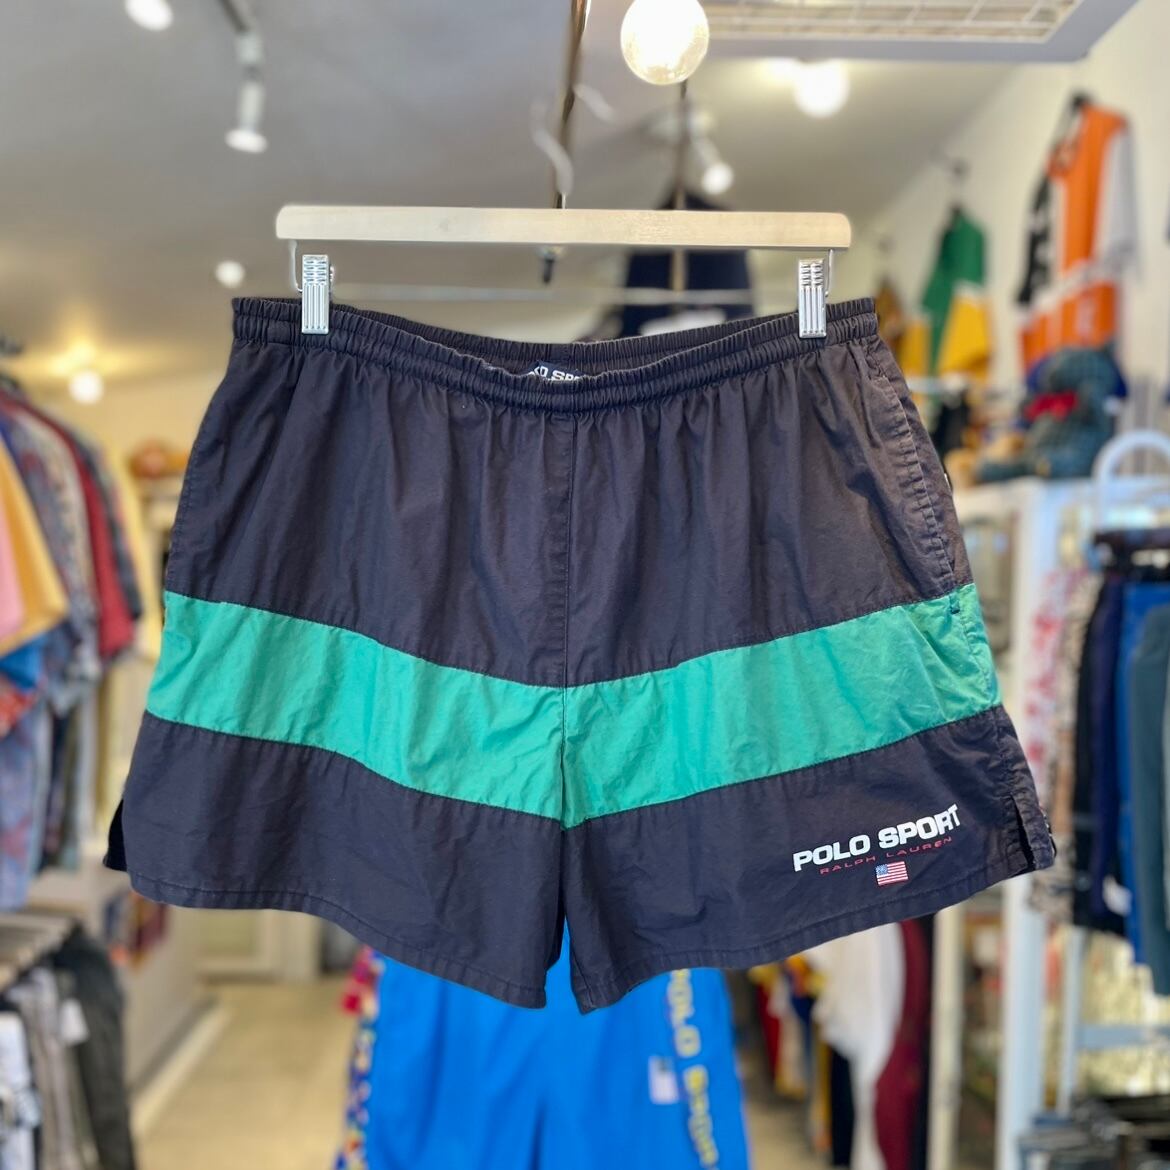 90s POLO SPORT(ポロスポーツ) Colorblock Swim Shorts カラーブロック スイムショーツ ハーフパンツ / XL